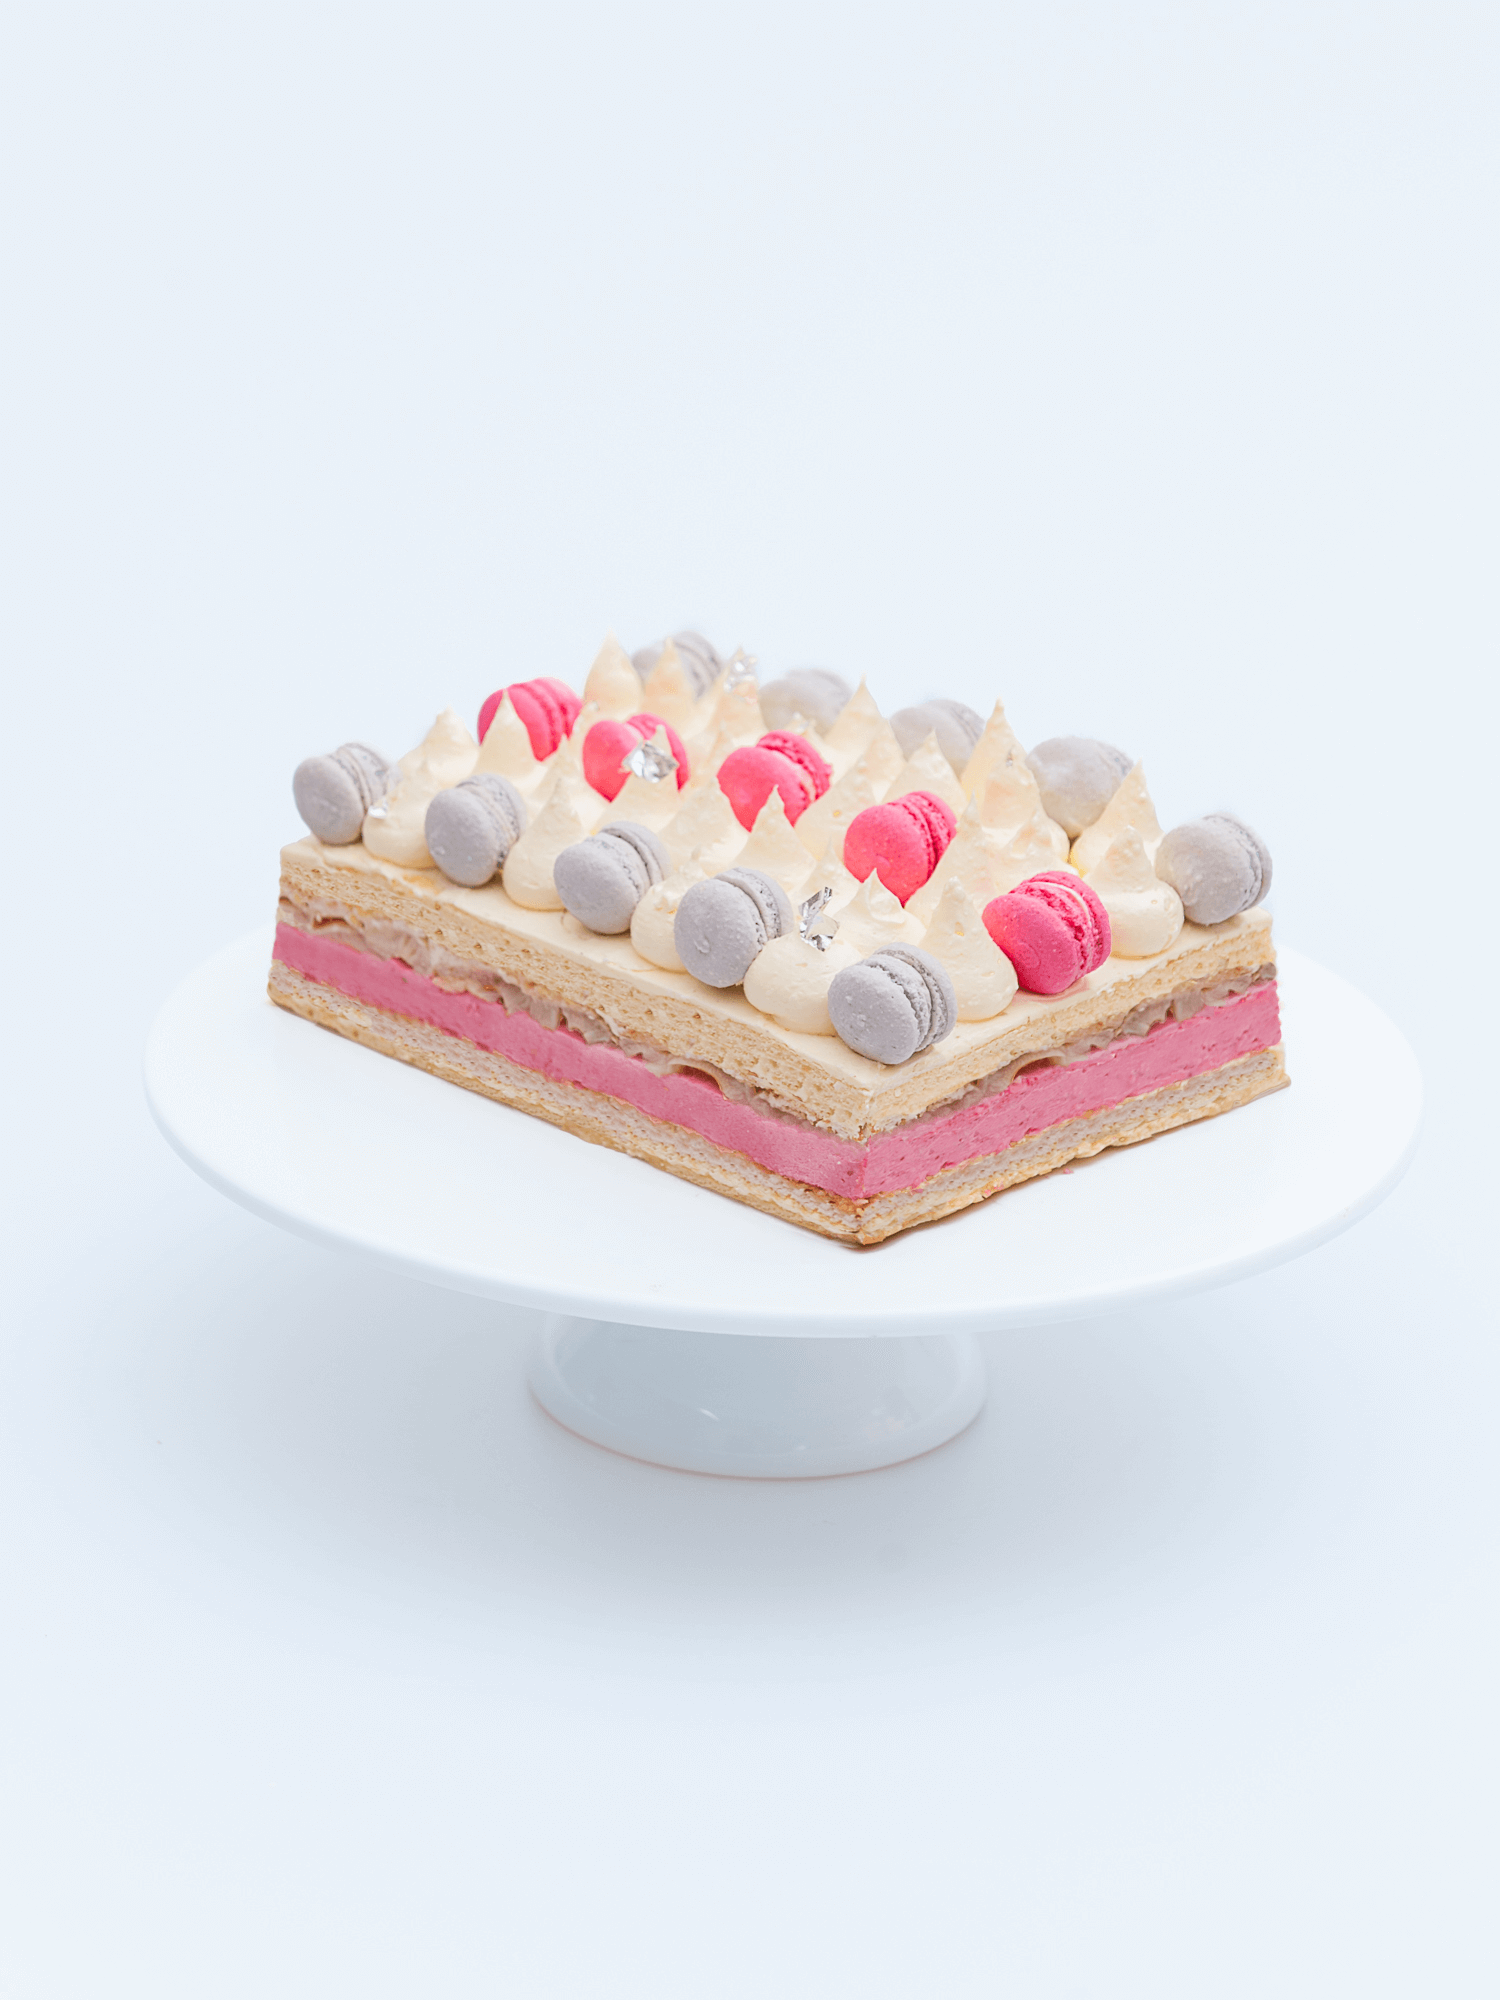 Sakura Mousse Cake - Dessert Recipes on Tiktok Ms Shi & Mr He